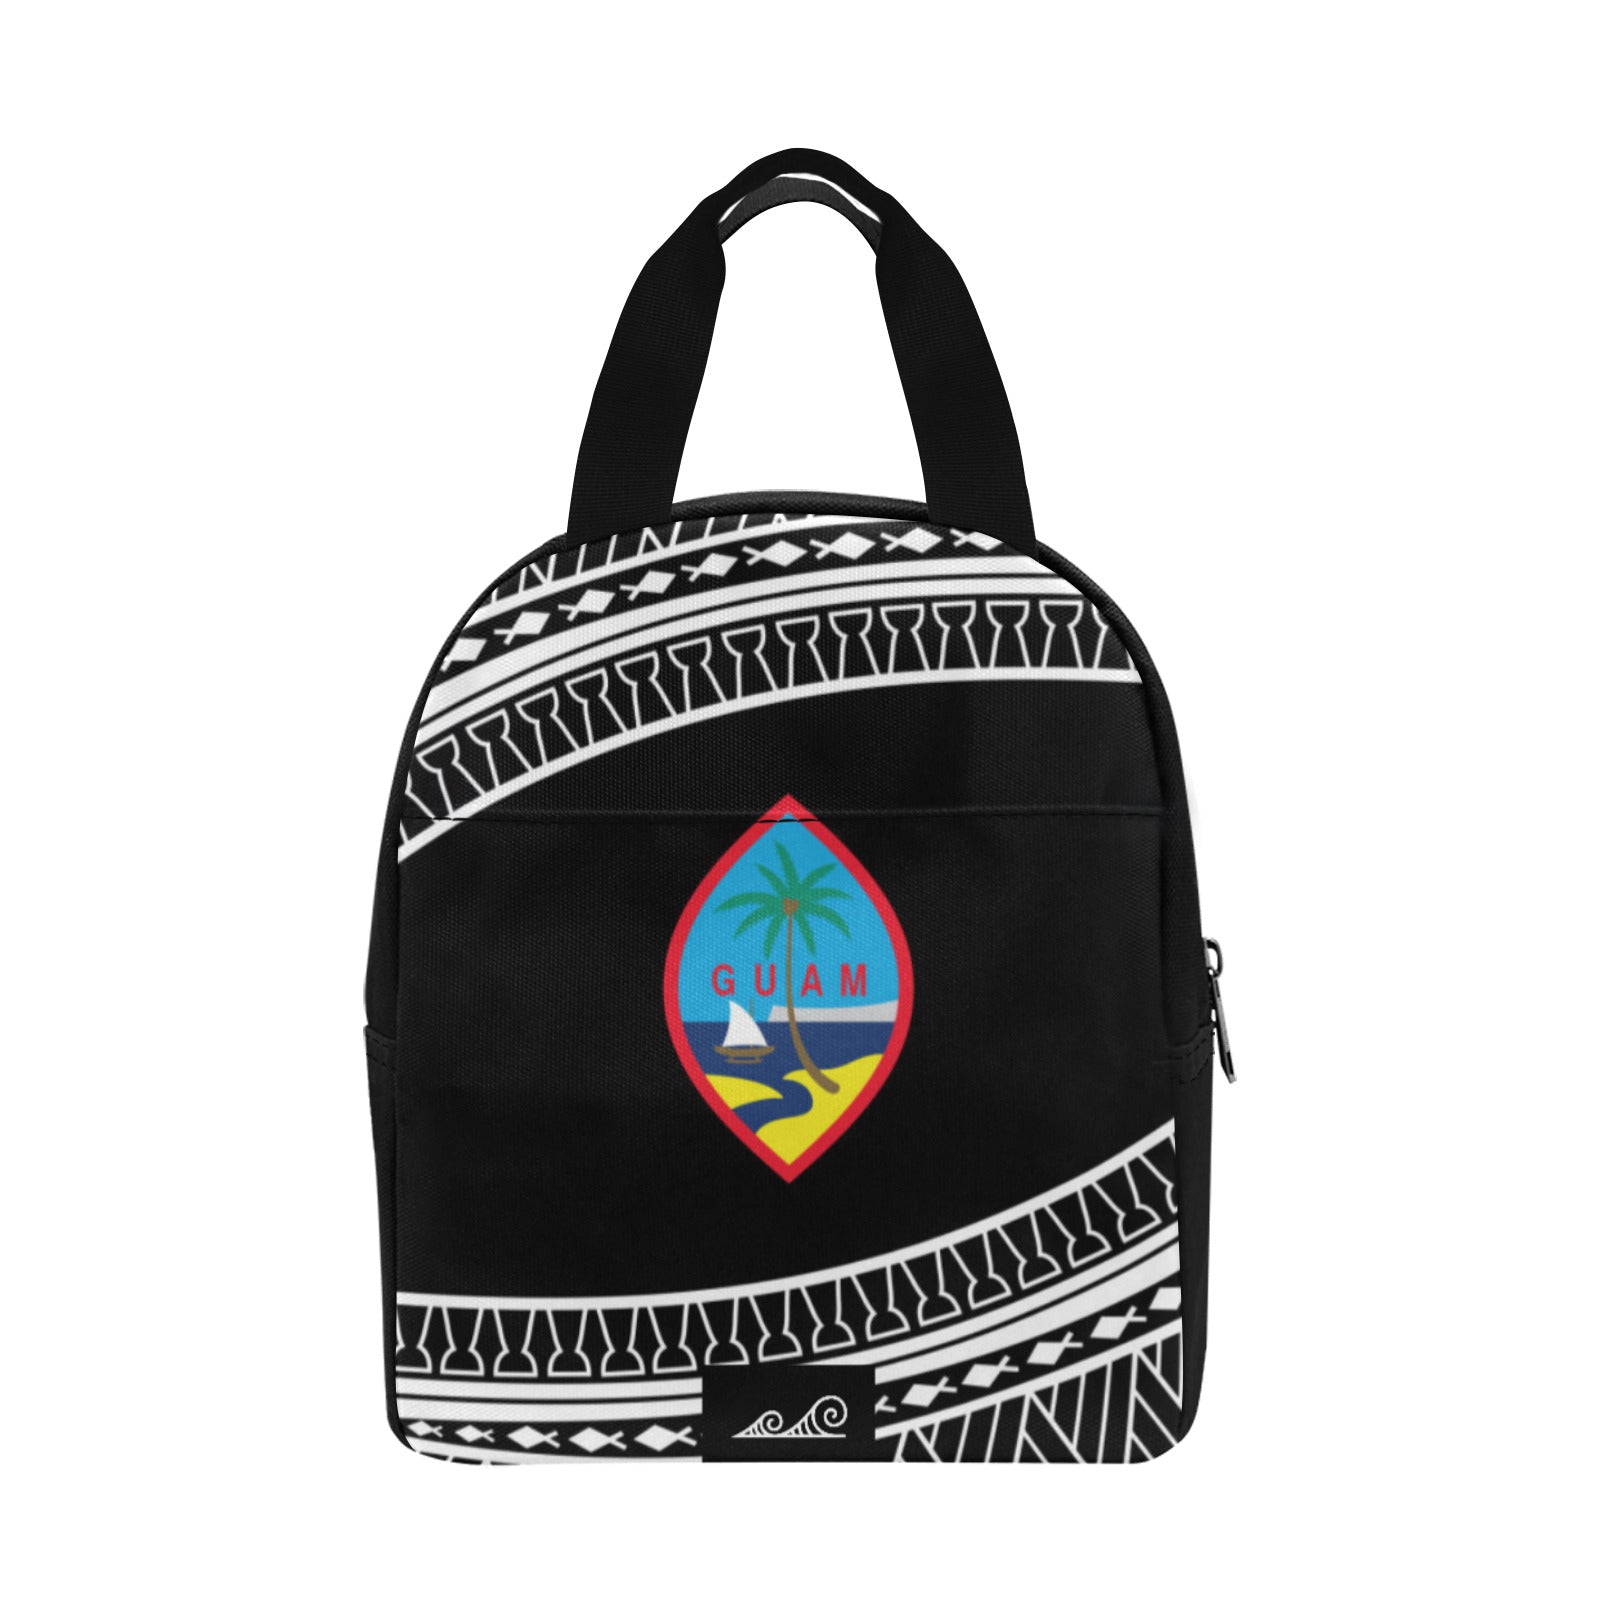 Hafa Adai Guam Tribal Black Zipper Lunch Bag